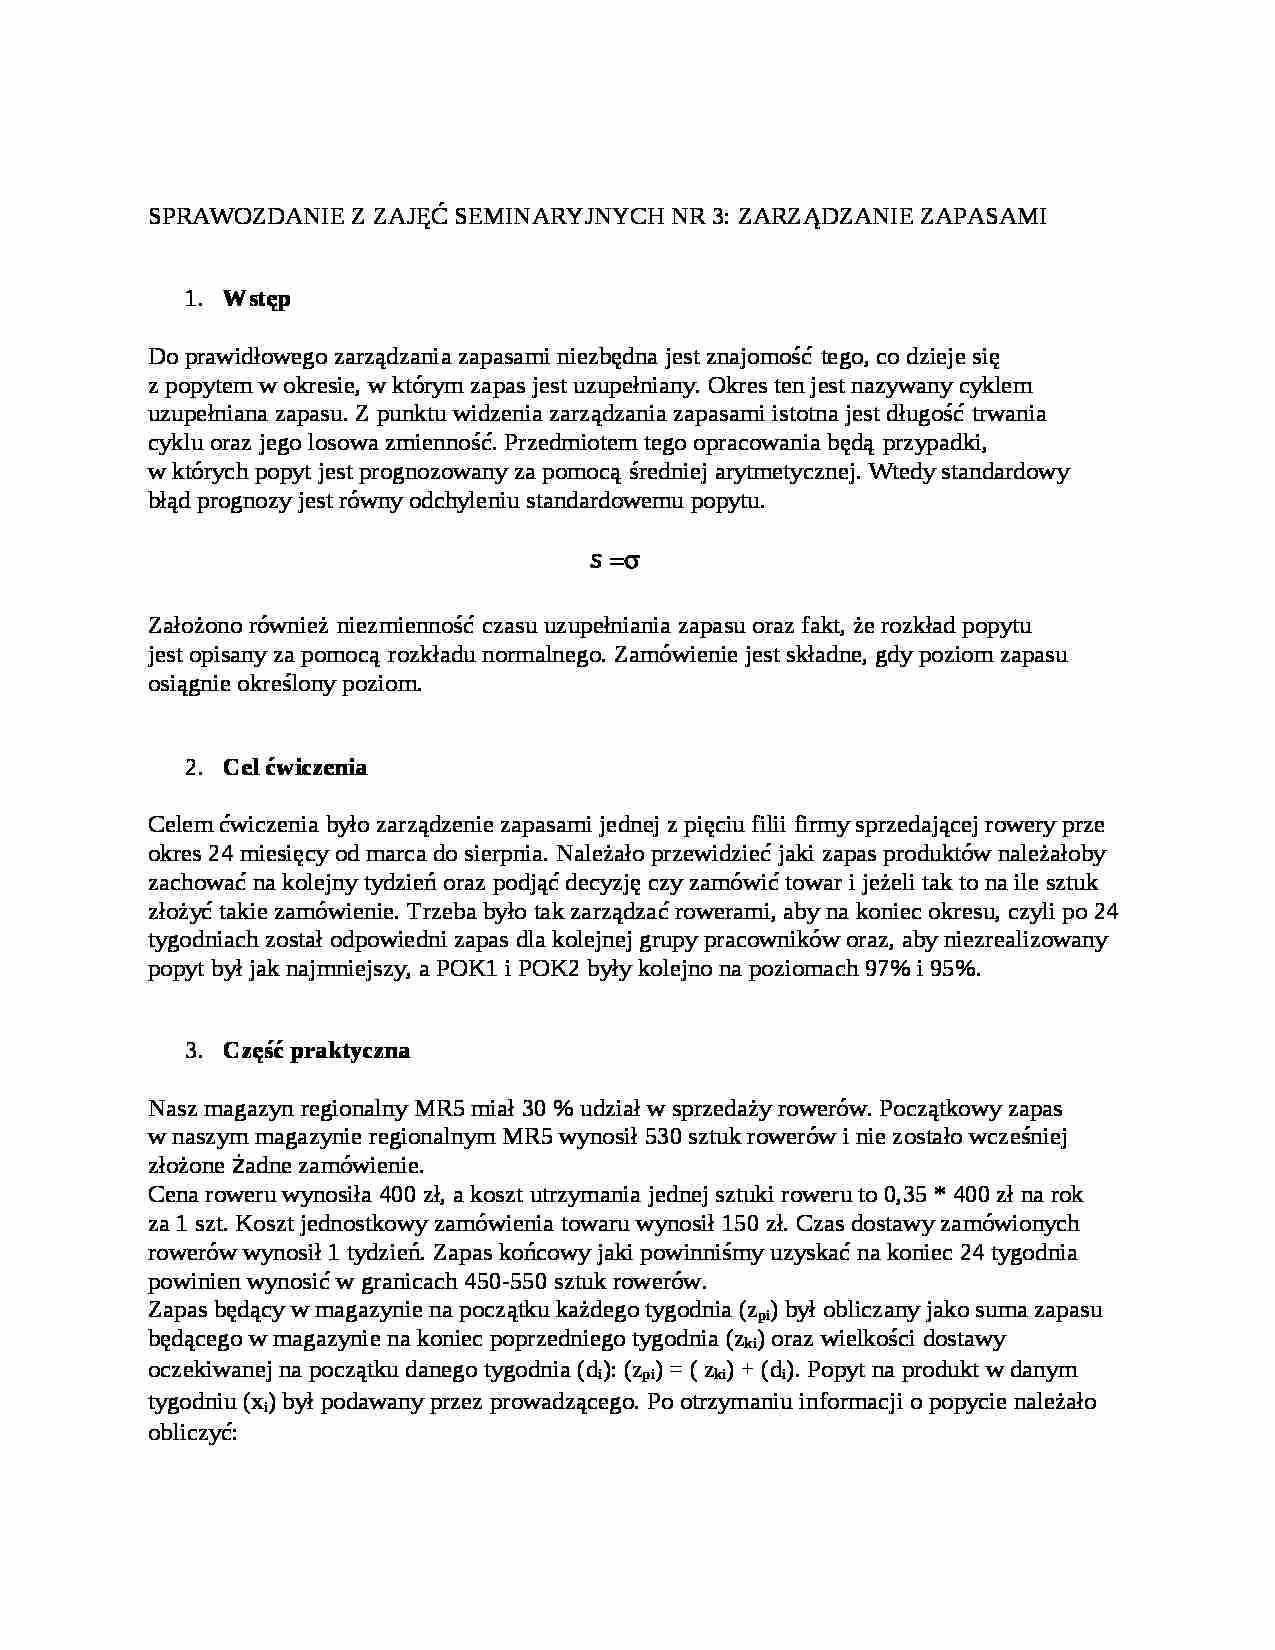  Zarządzanie zapasami-sprawozdanie - strona 1